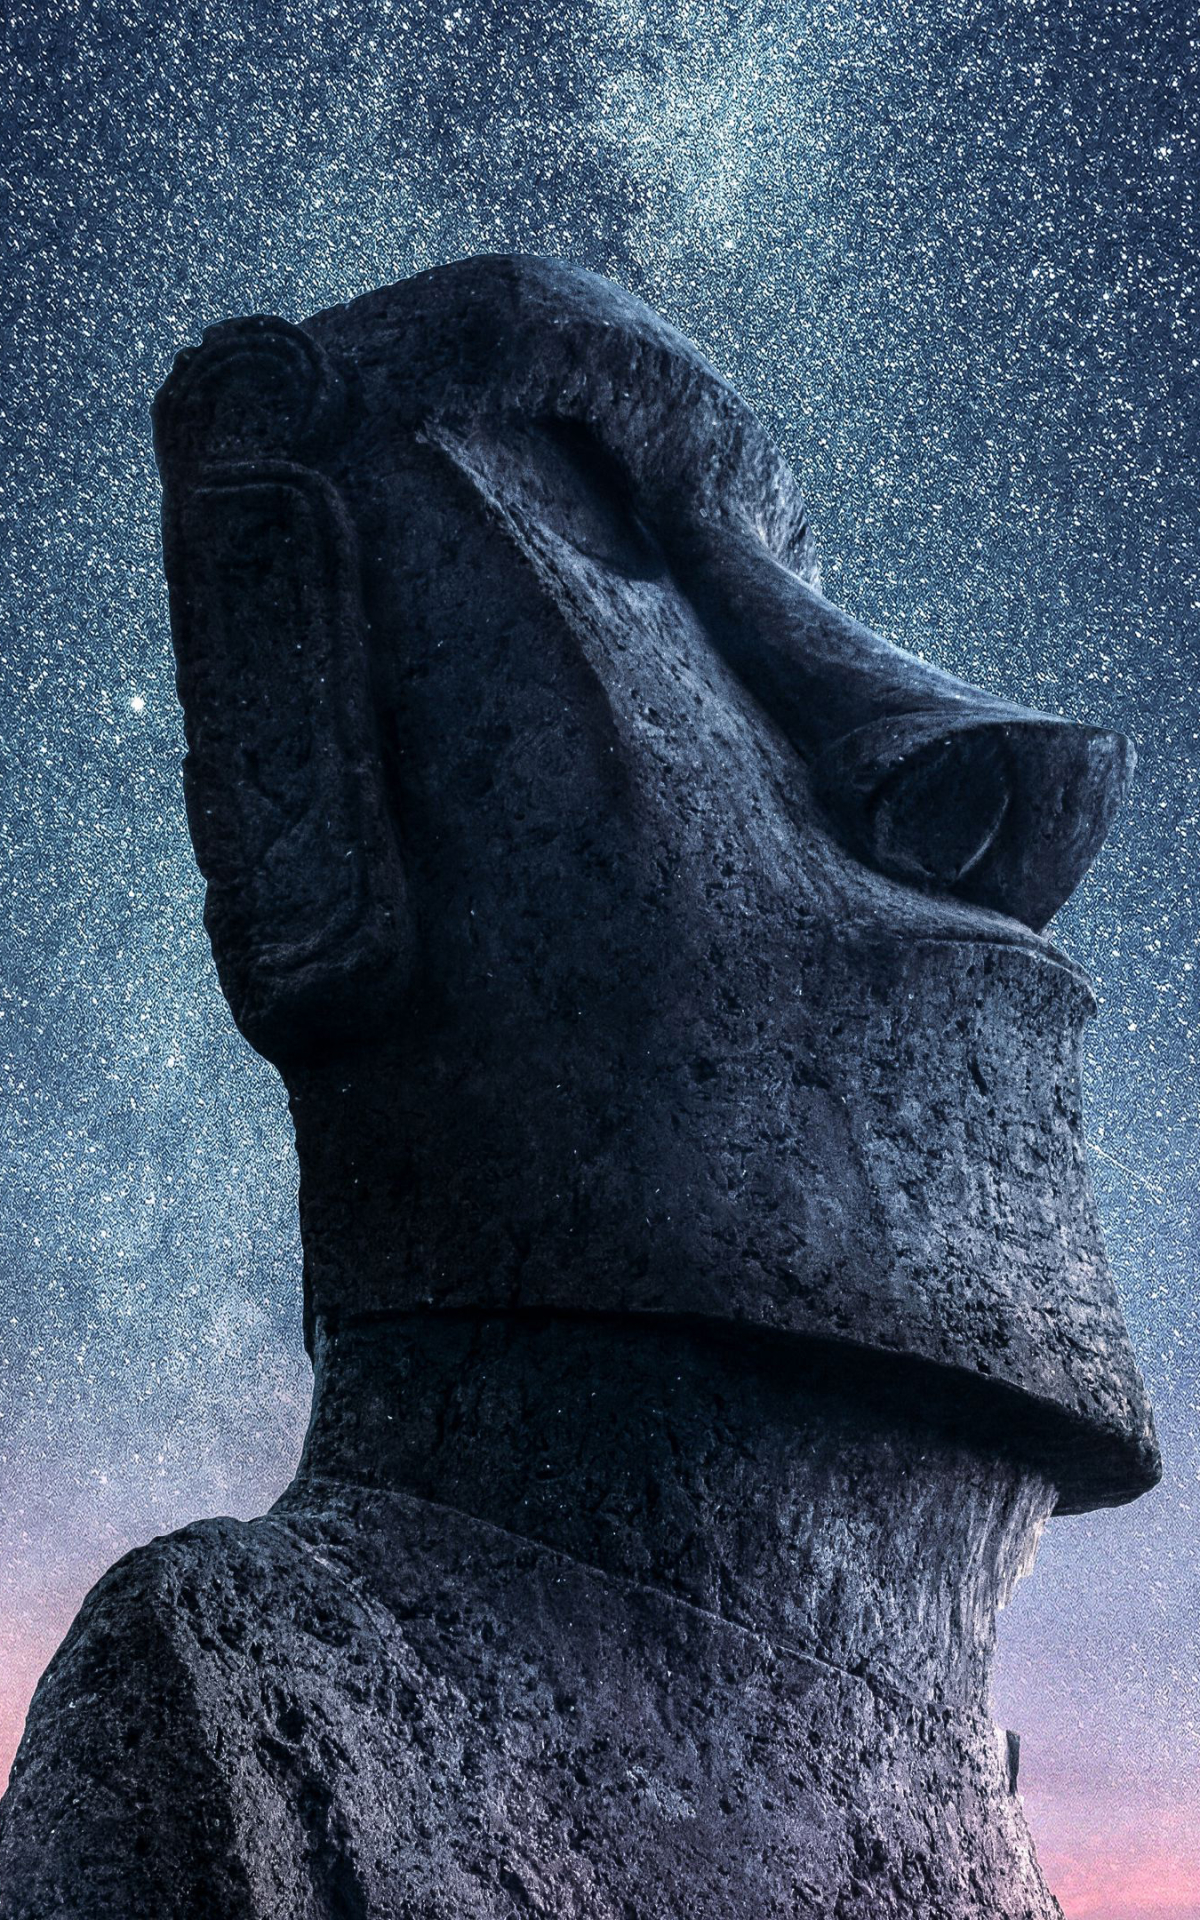 man made, moai, easter island, moai statues images